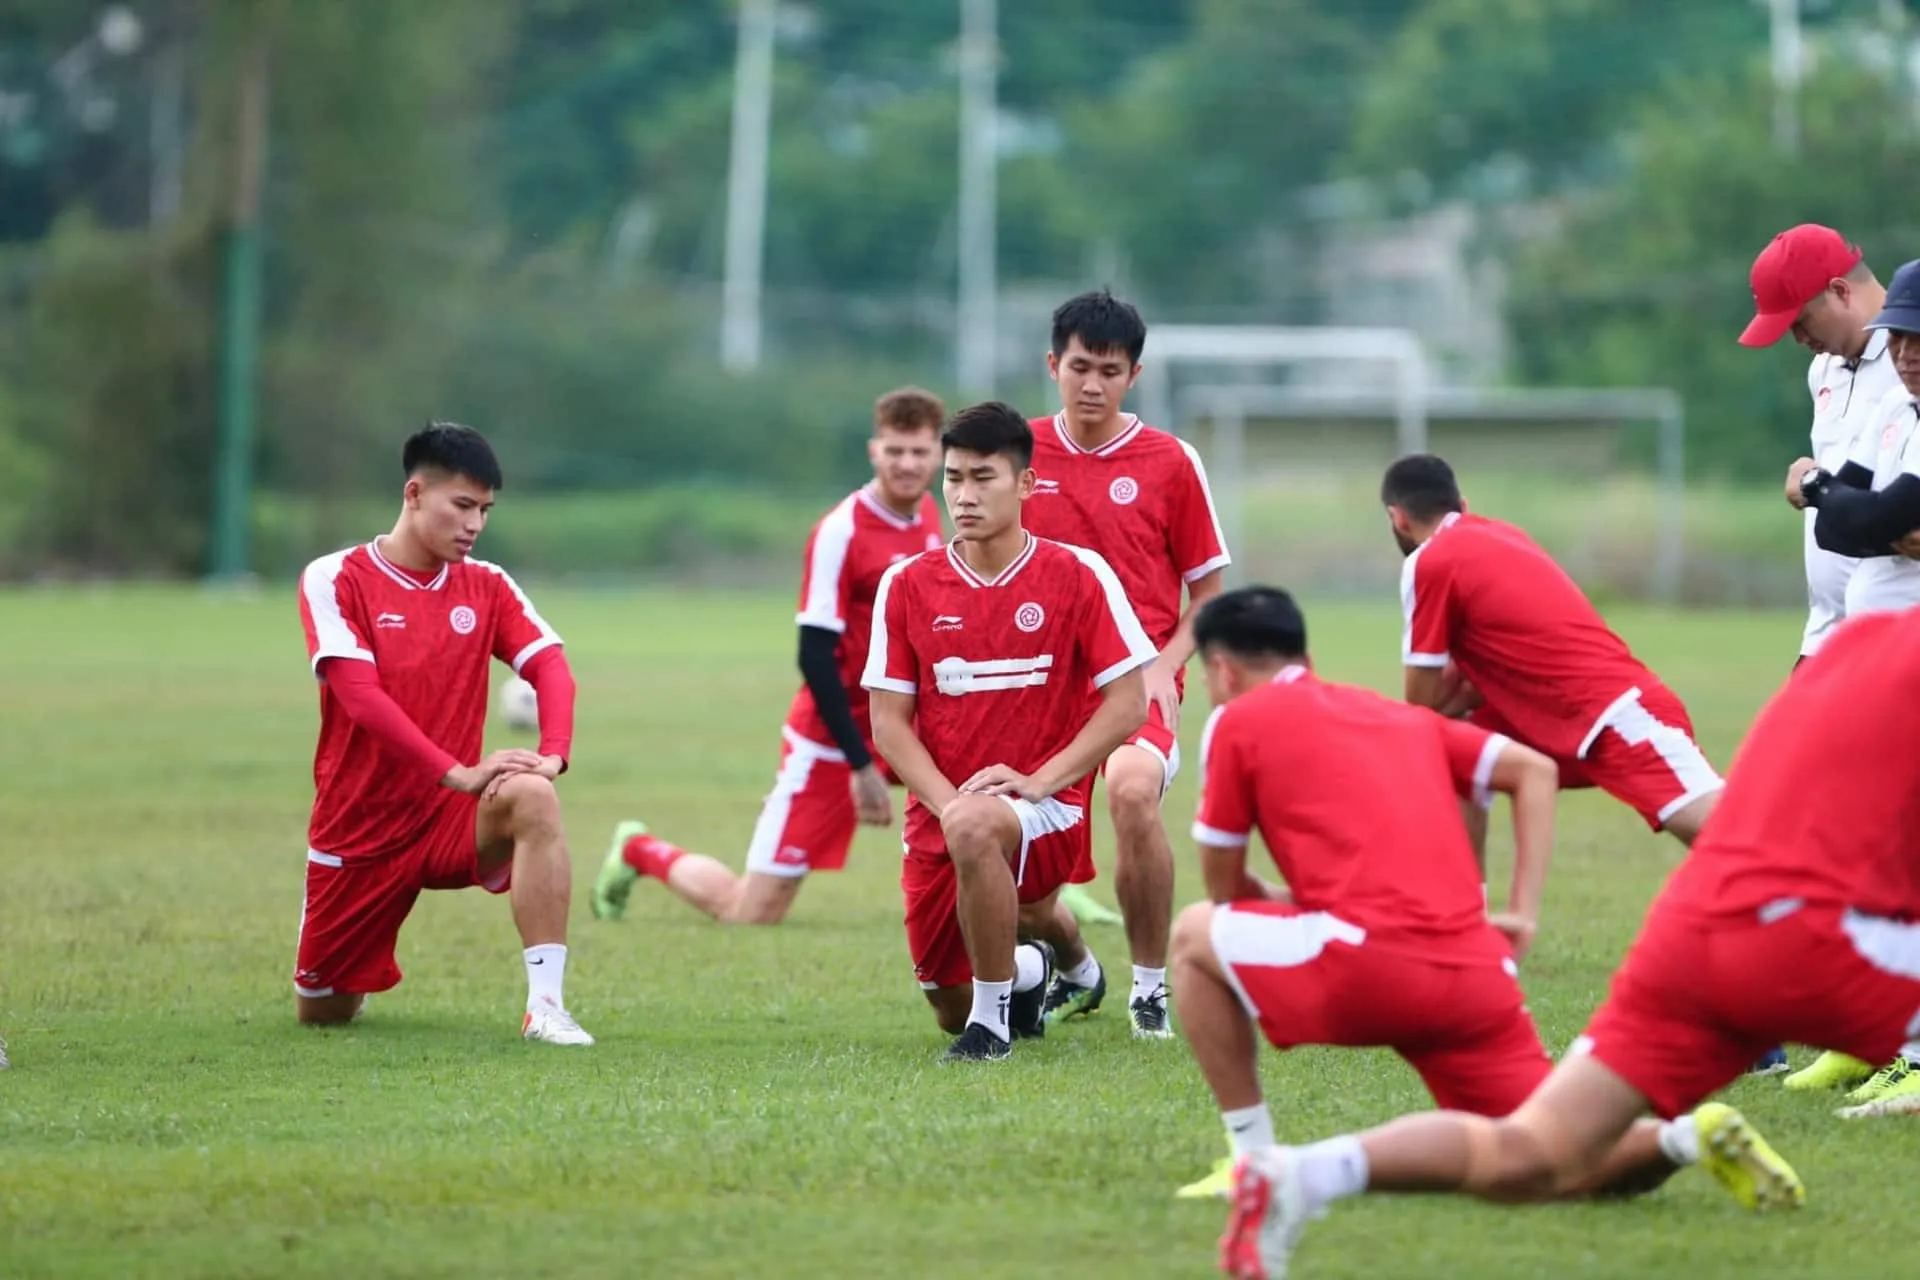 VCK U15 Quốc gia 2022 khai màn tưng bừng - U16 Việt Nam nhận thưởng khủng